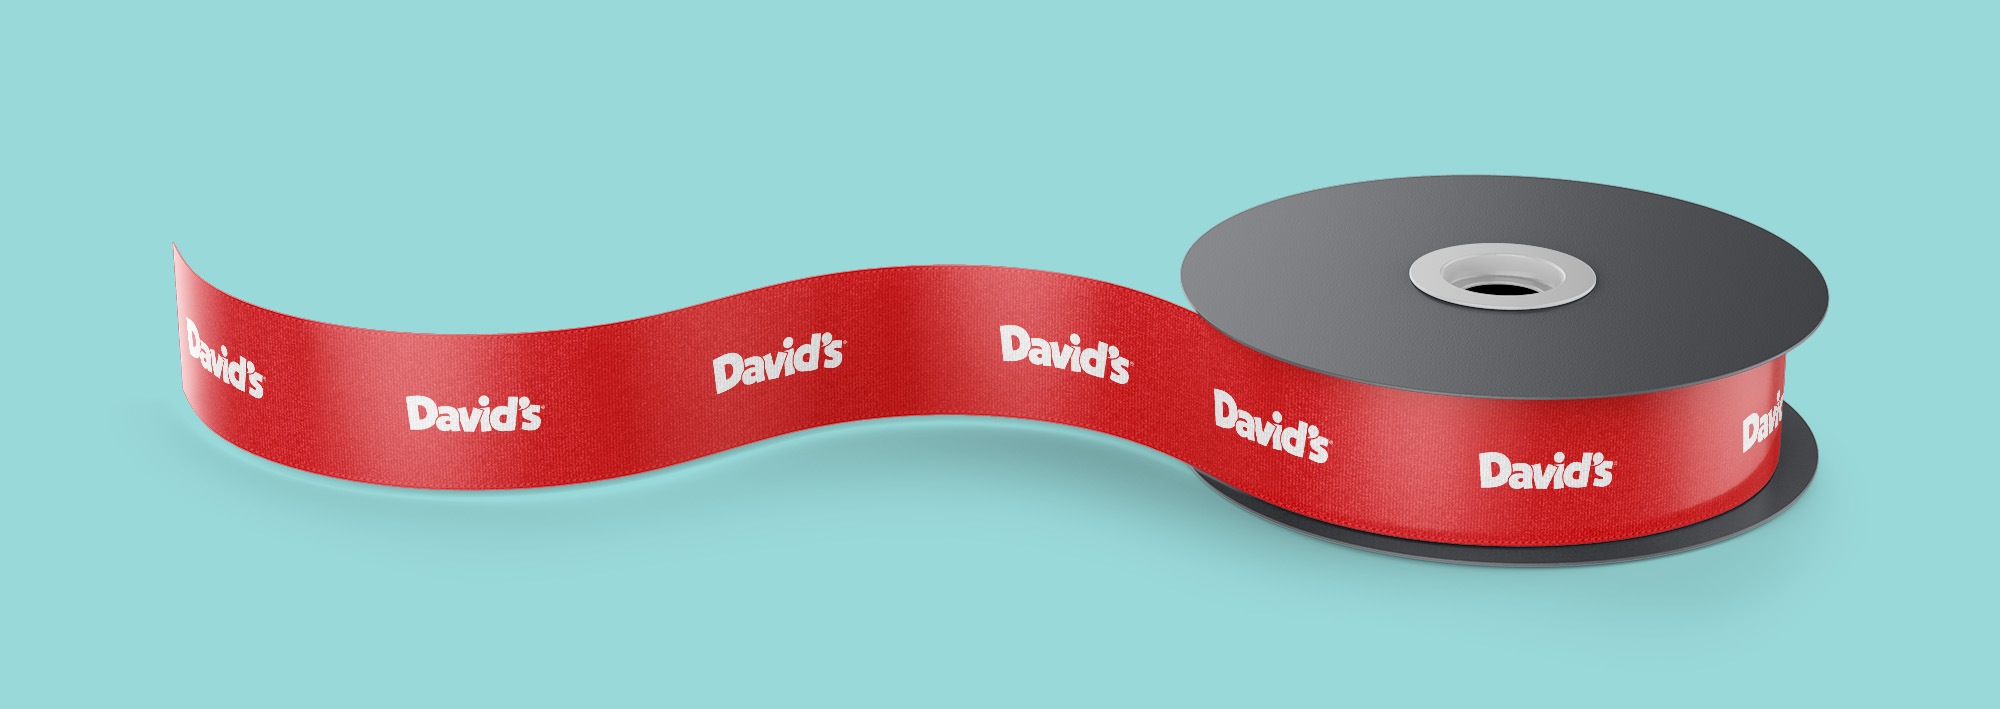 David's Cookies Brand Design - Branding by Miller Creative